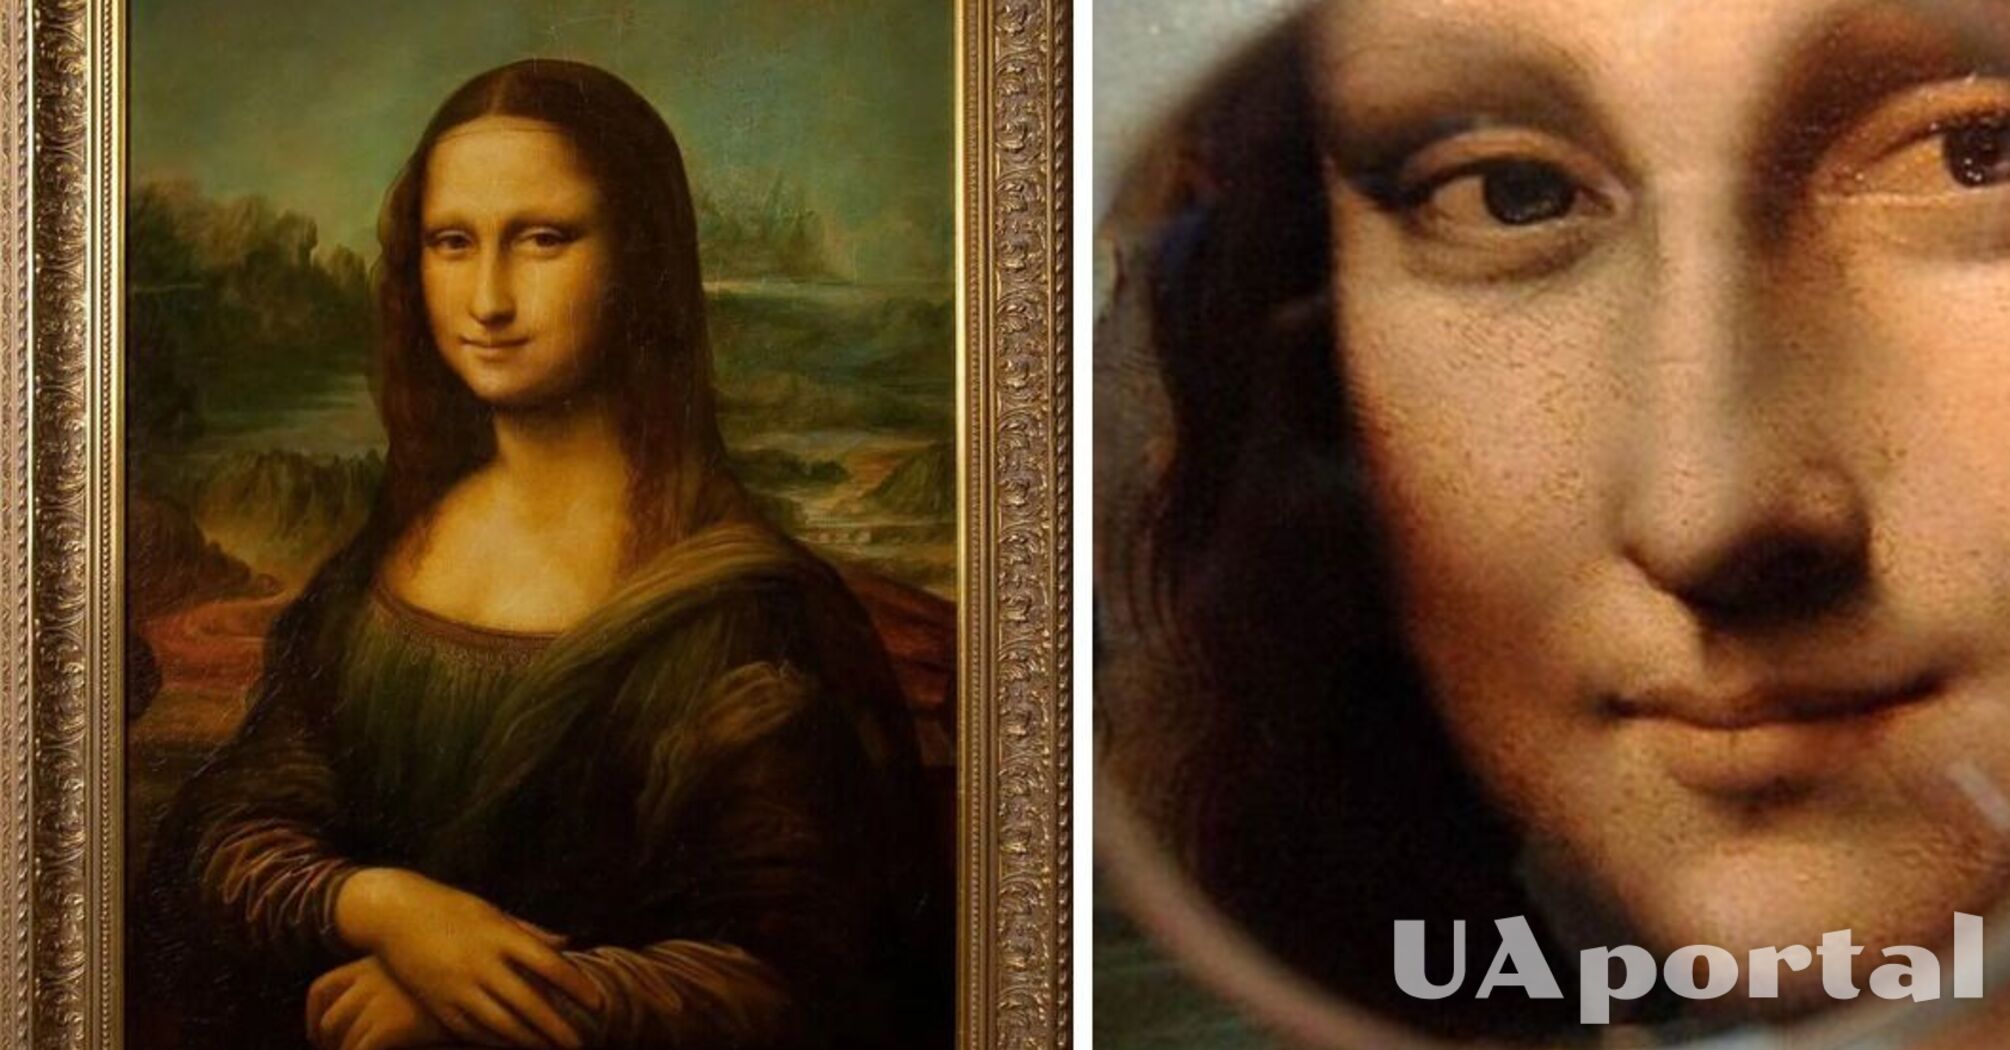 Ученые выяснили, какую местность нарисовал Леонардо да Винчи на картине Мона Лиза.